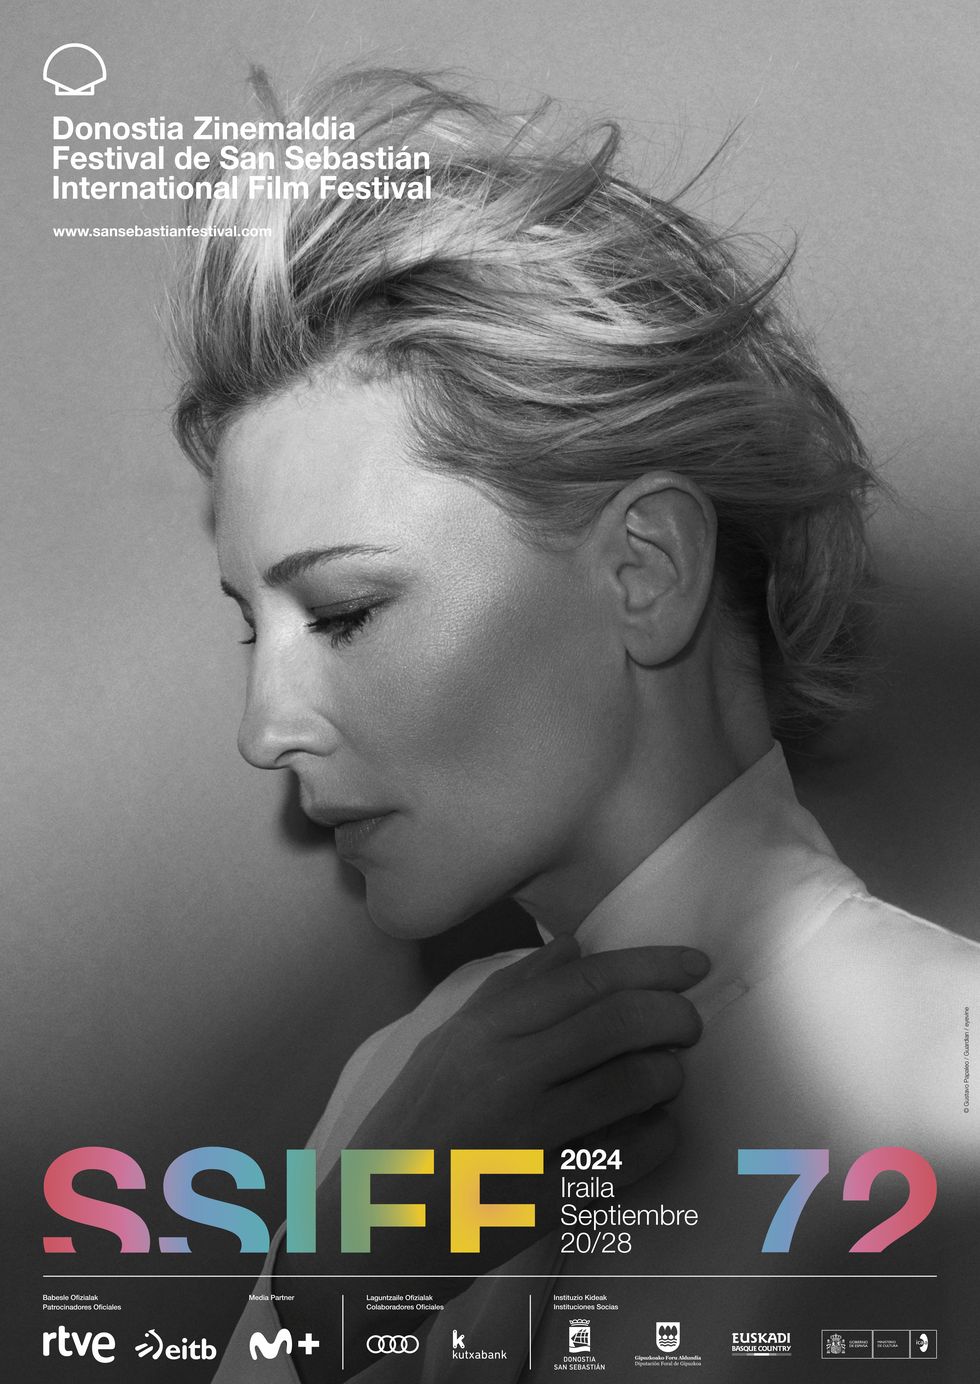 Festival de San Sebastián 2024: Cate Blanchett, Premio Donostia e imagen del cartel del Zinemaldia